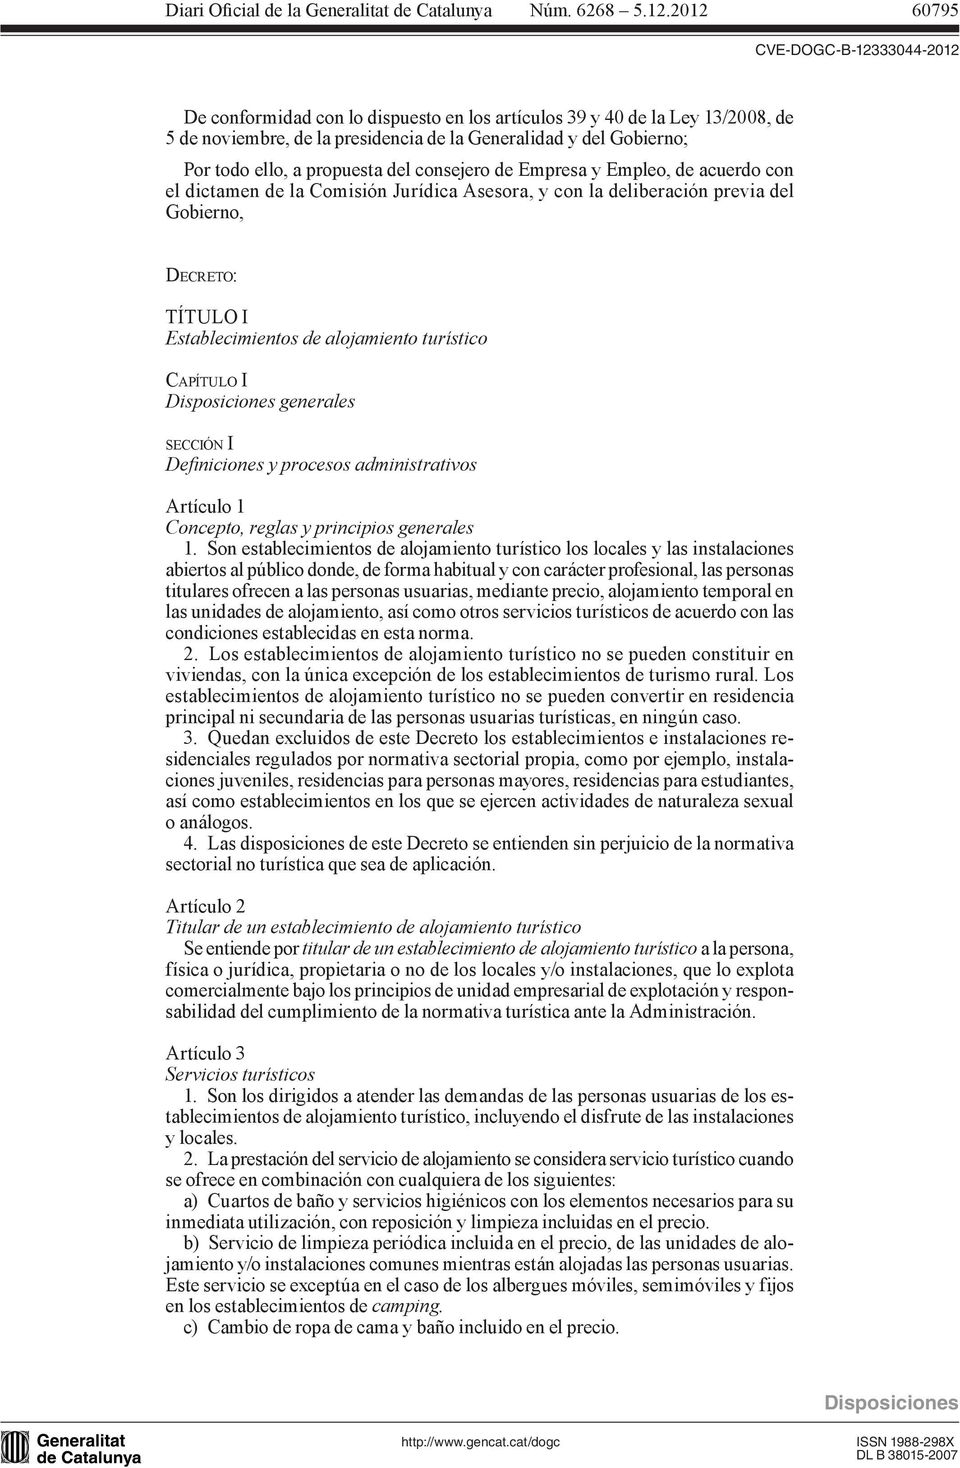 generales SECCIÓN I Deiniciones y procesos administrativos artículo 1 Concepto, reglas y principios generales 1.